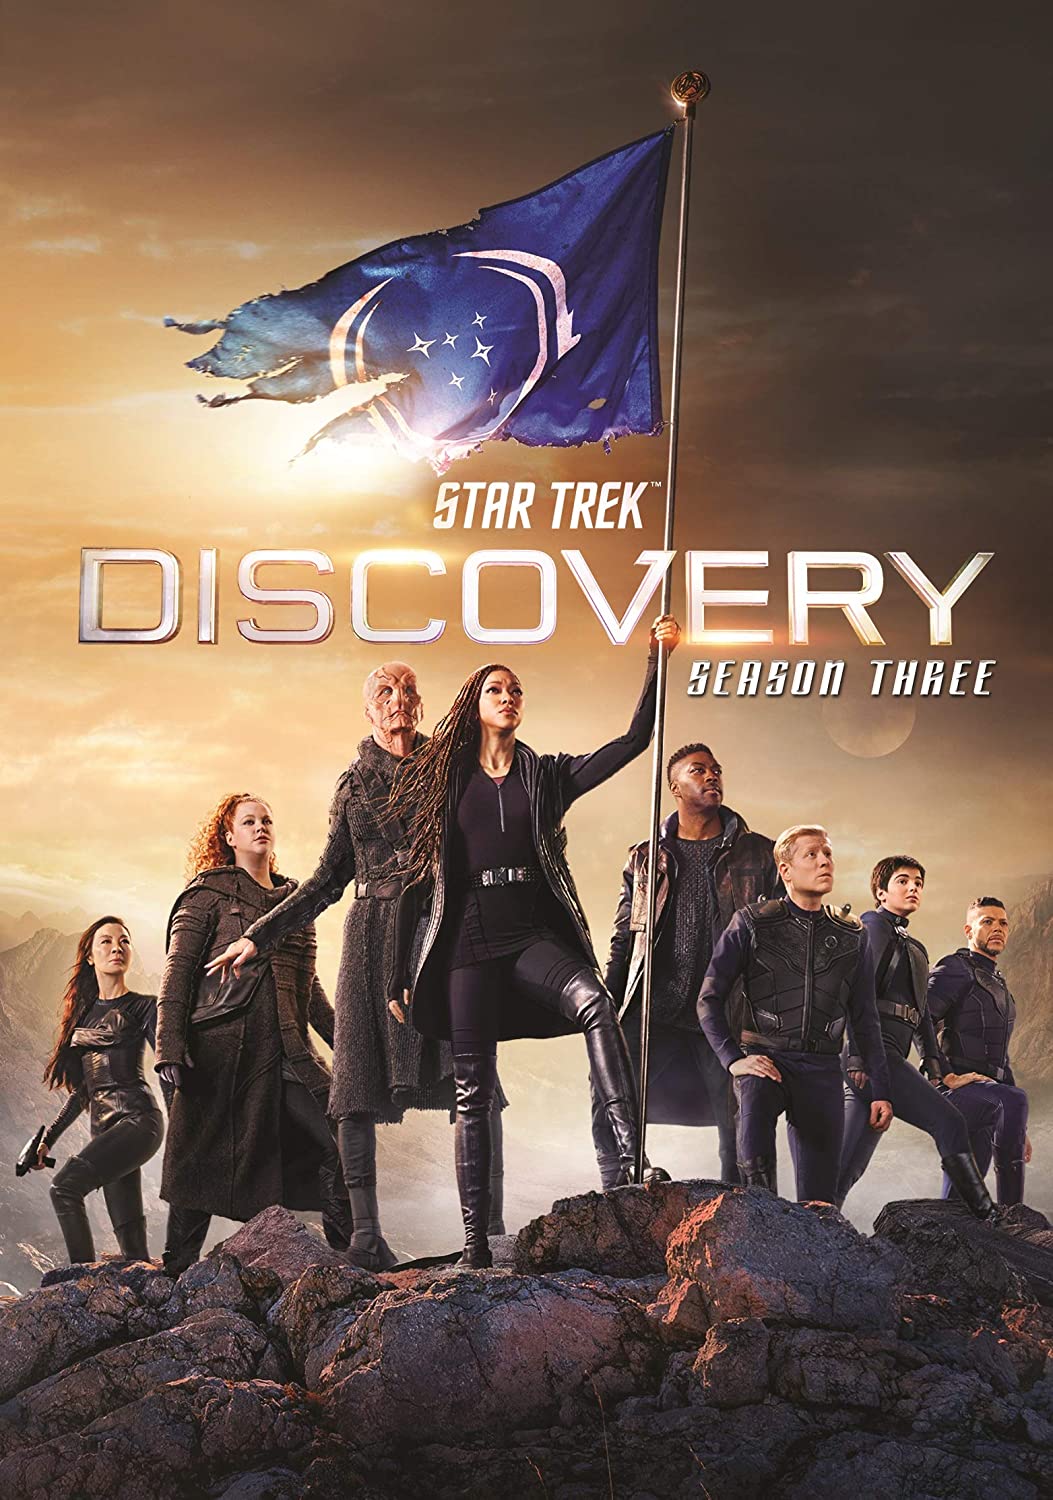 ดูหนังออนไลน์ฟรี Star Trek Discovery Season 3 EP2 สตาร์ เทรค ดิสคัฟเวอรี่ ซีซั่นที่ 3 ตอนที่ 2